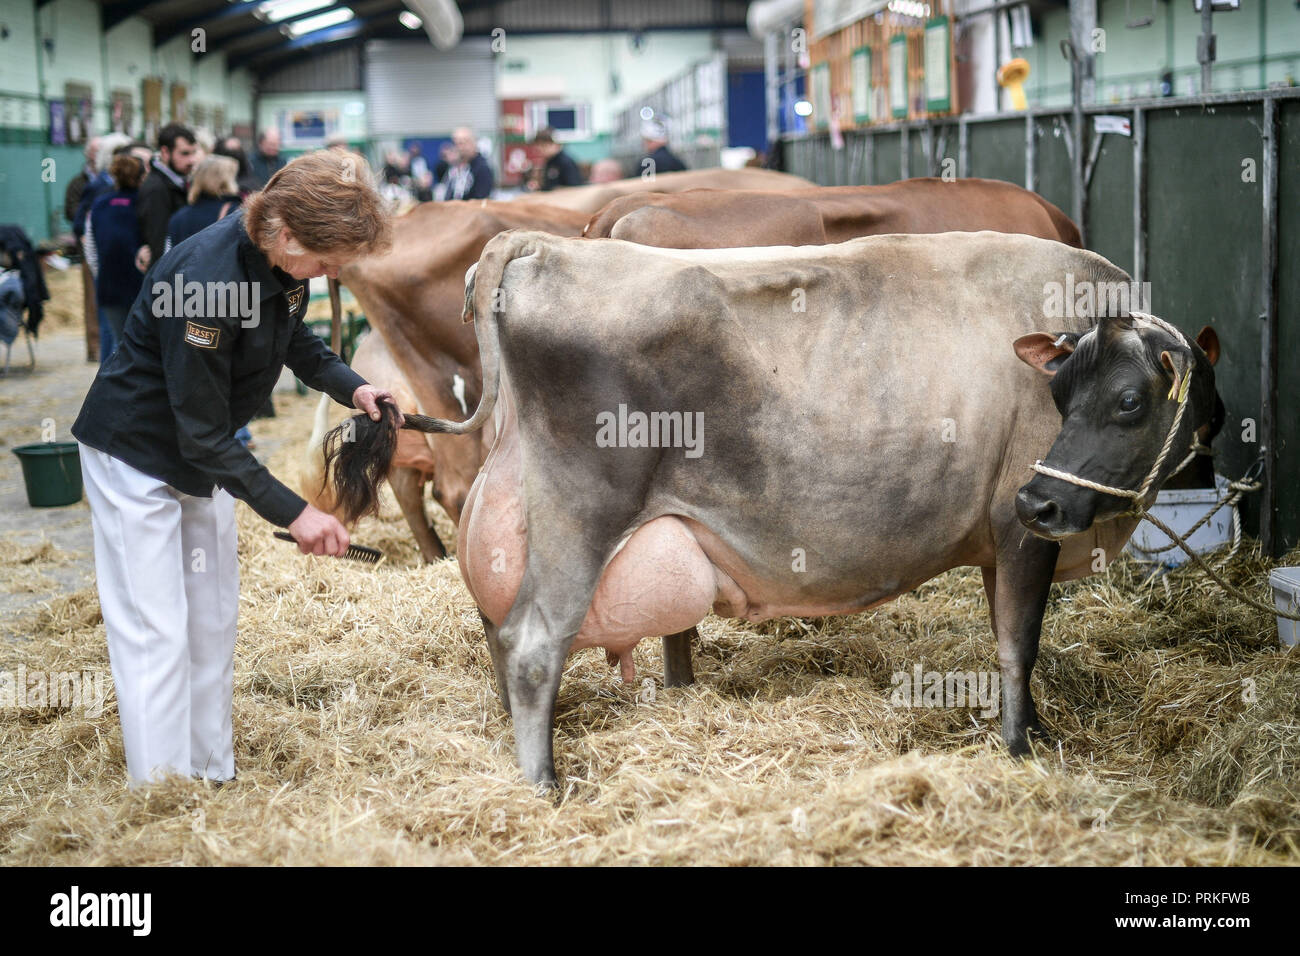 Une vache regarde sa queue alors qu'elle est brossée par son maître dans les hangars du Dairy Show, du Bath & West Showground, Shepton Mallet, l'un des plus grands spectacles laitiers du Royaume-Uni avec quelques 3,000 entrées de bétail. Banque D'Images